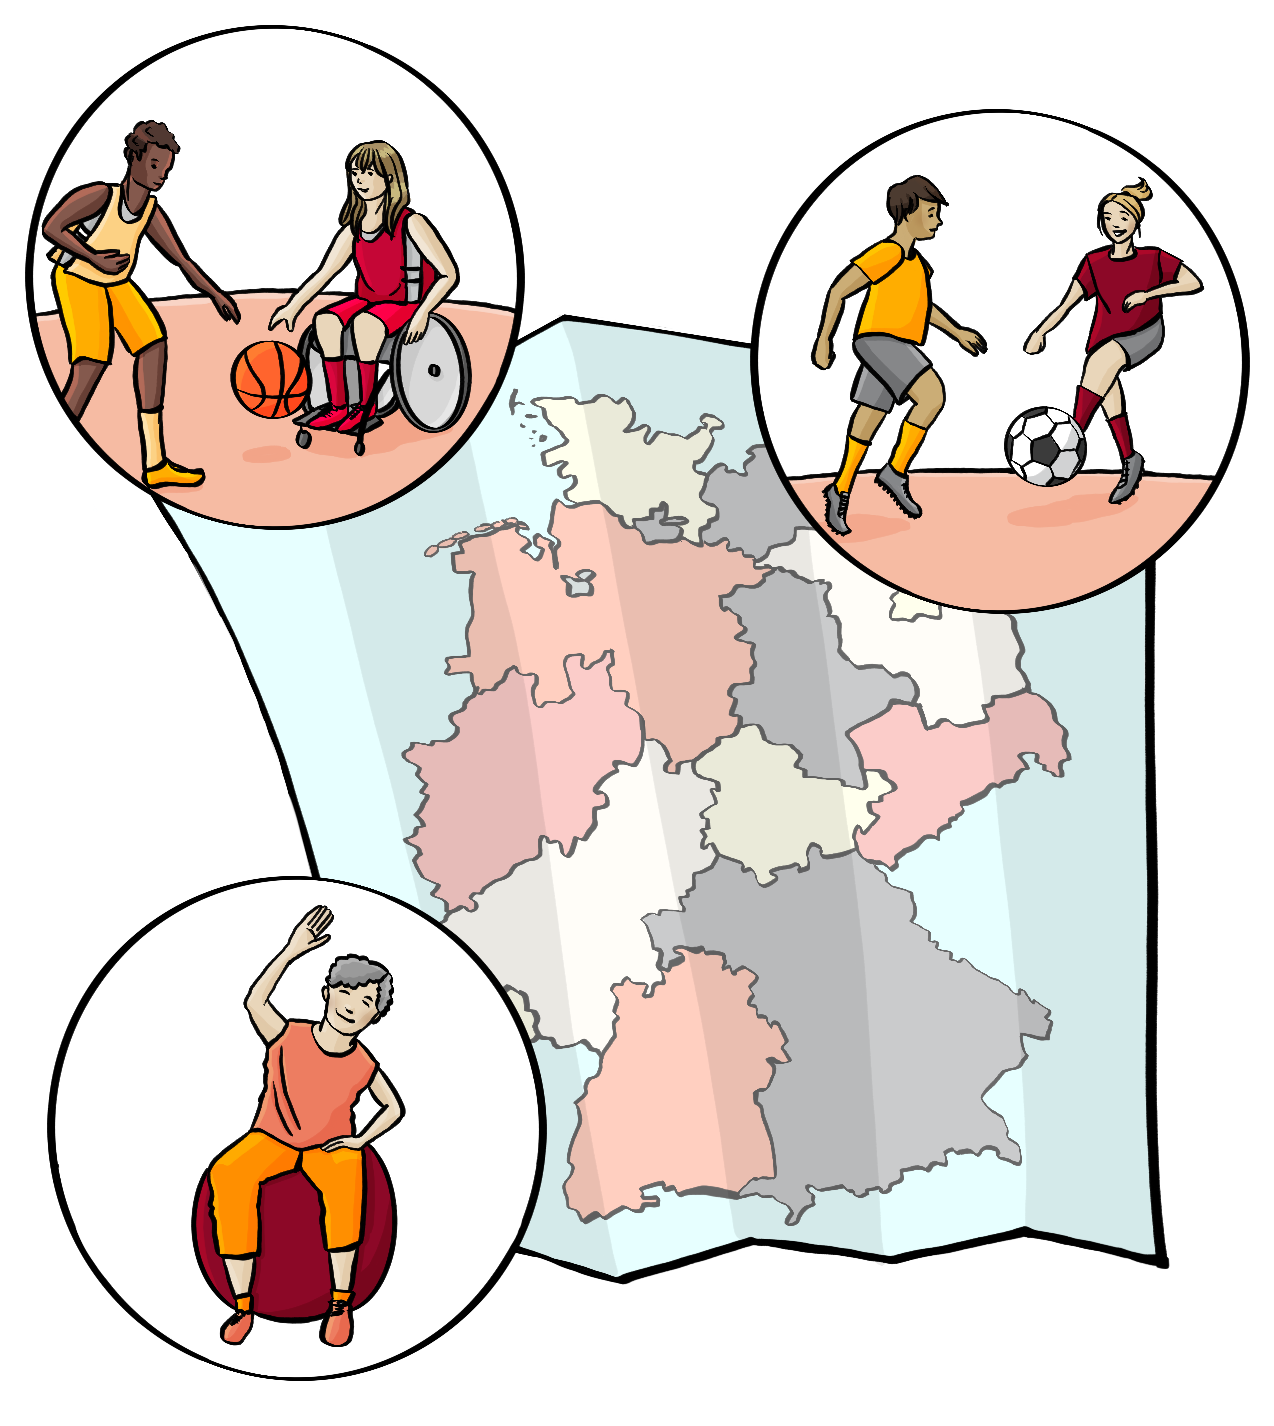 Eine Deutschlandkarte mit drei Kreisen. Im ersten Kreis ist ein Bild von einem Mann und einer Frau im Rollstuhl. Sie spielen Basketball. Im zweiten Kreis spielen eine Frau und ein Mann Fußball. Im dritten Kreis macht eine ältere Frau eine Übung auf einem Gymnastikball.